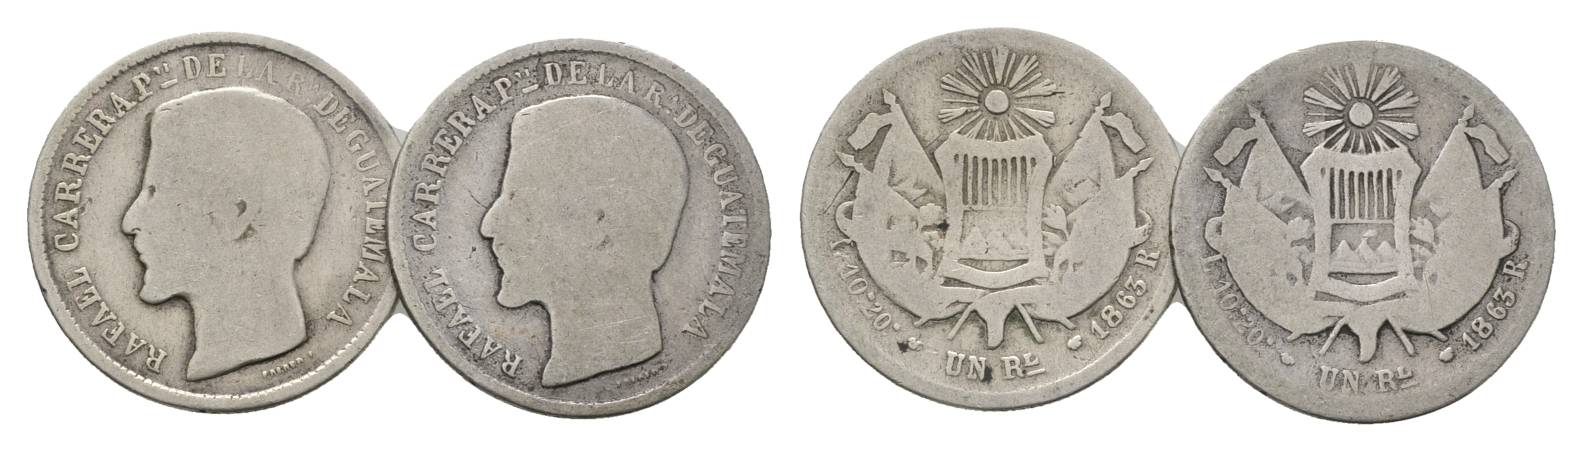  Guatemala, 1 Real 1863   